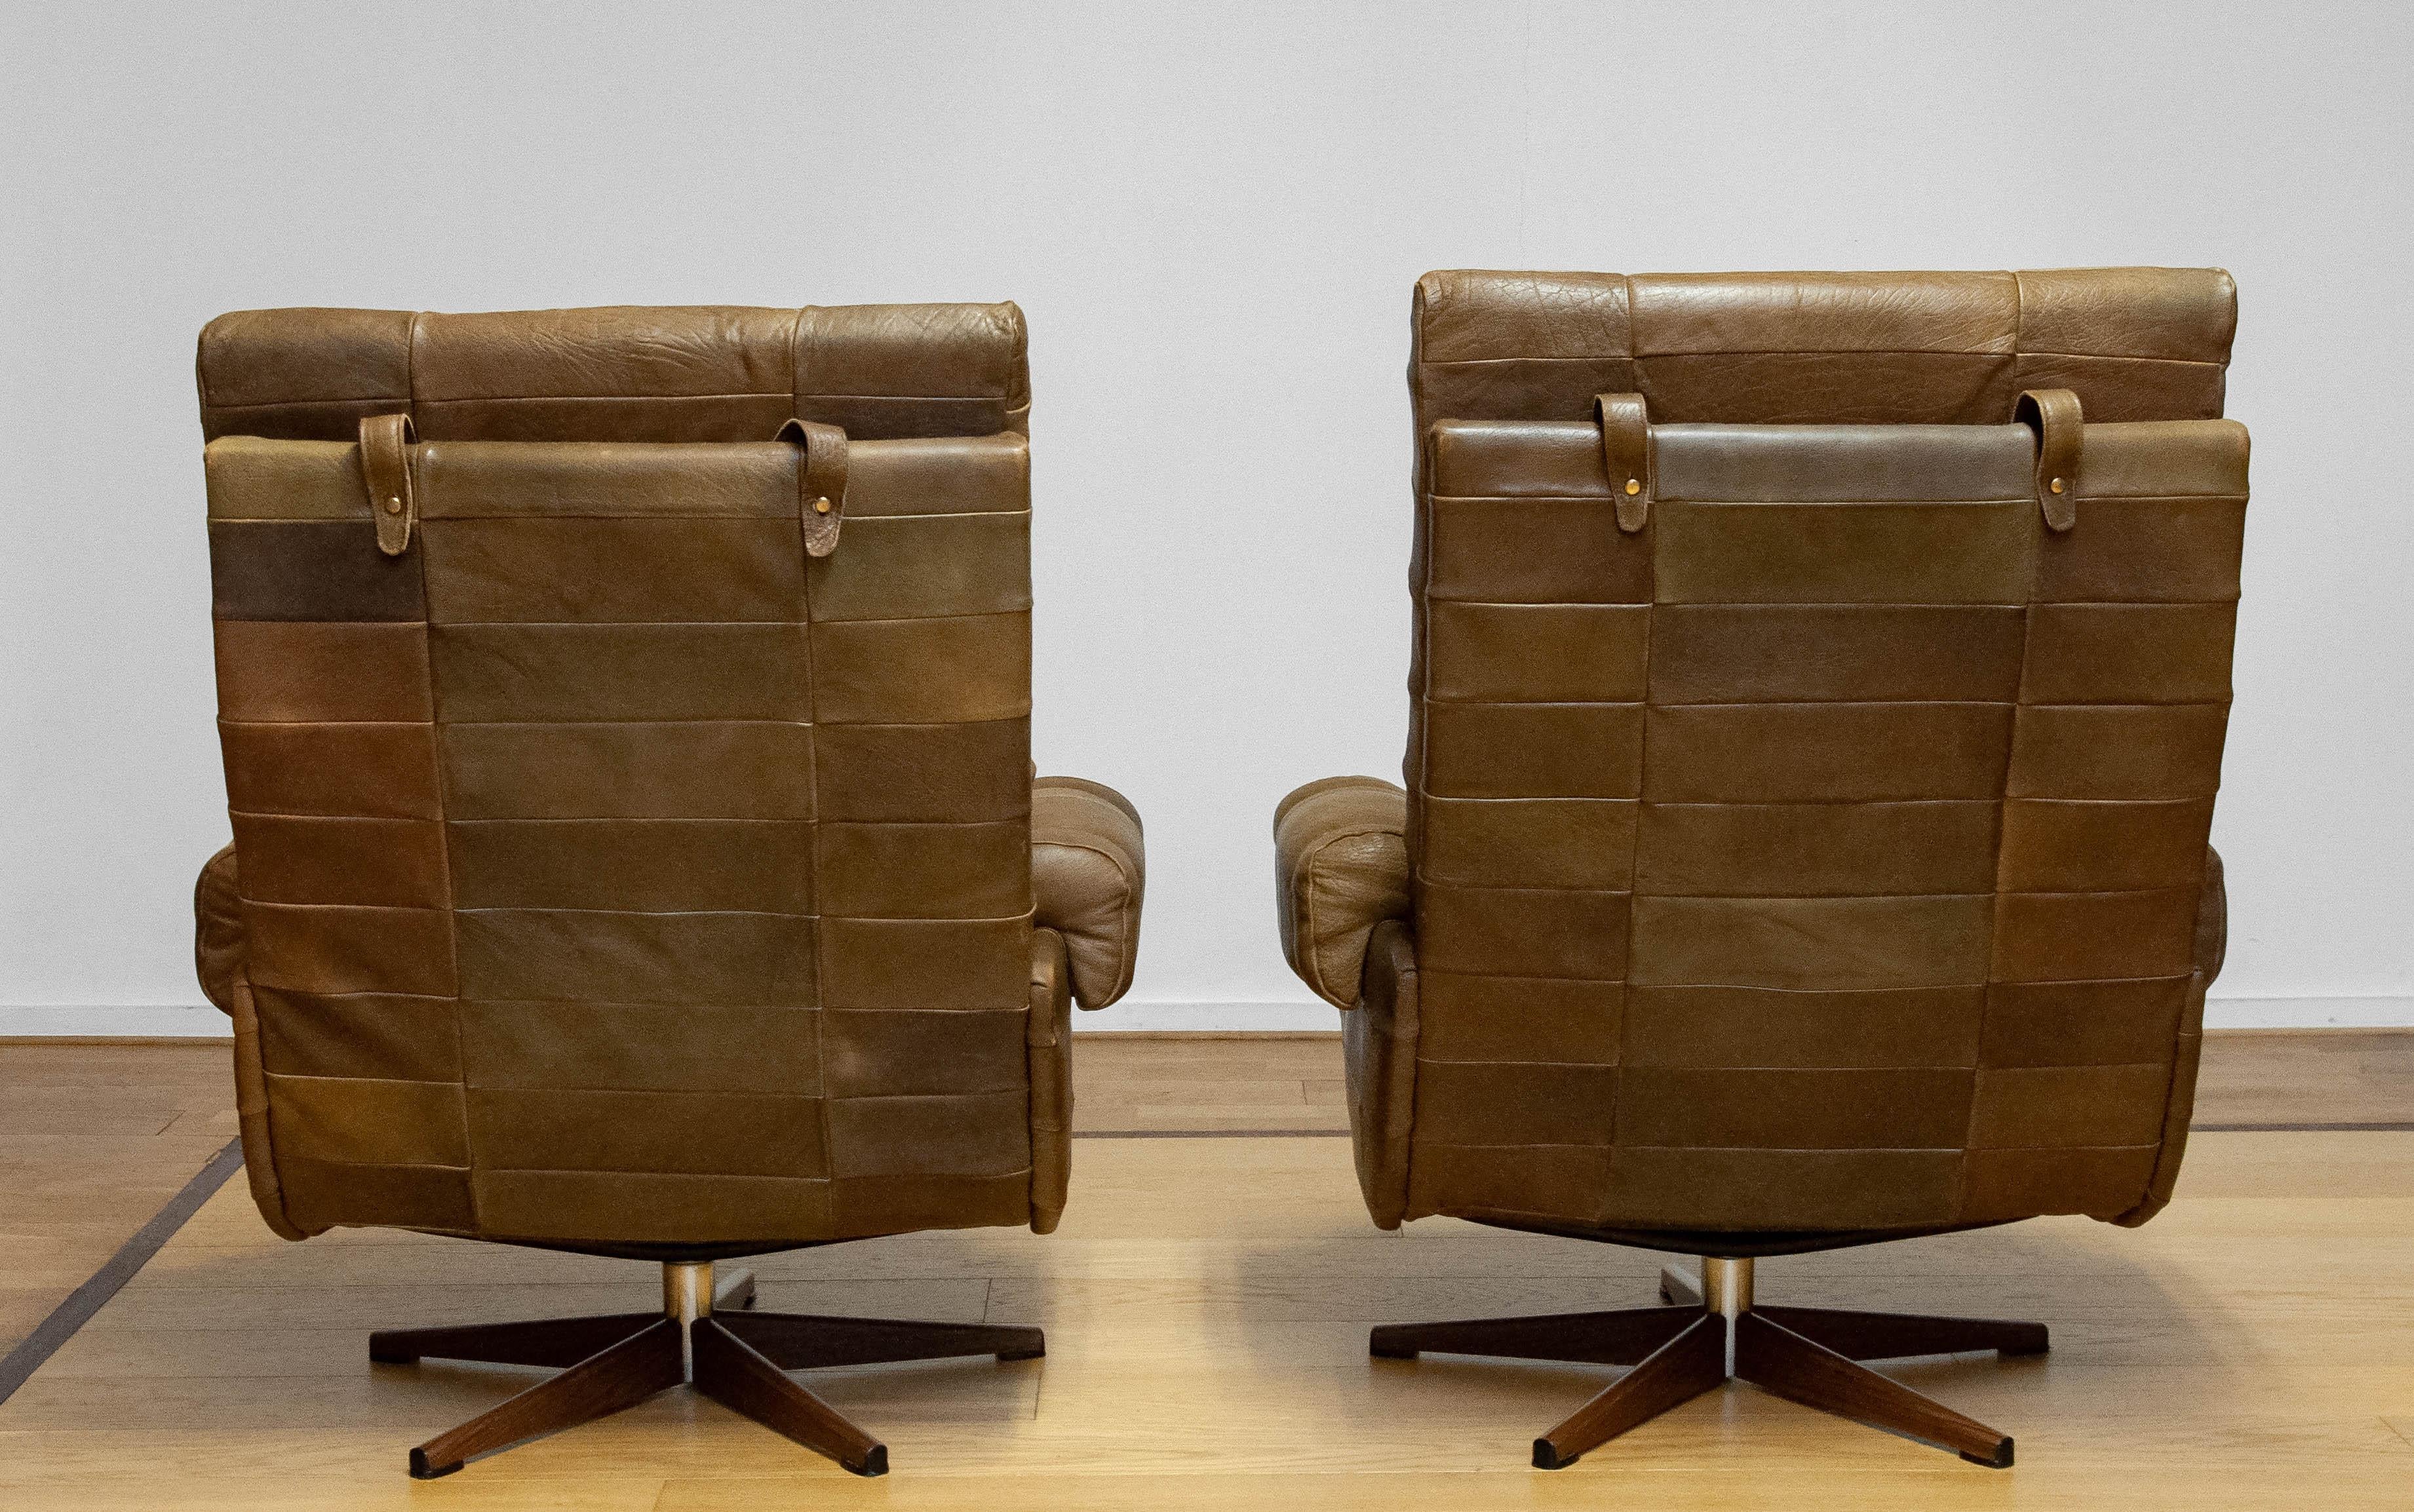 Fin du 20e siècle Paire de chaises pivotantes d'Arne Norell en cuir de buffle vert olive tourbillonné, années 70